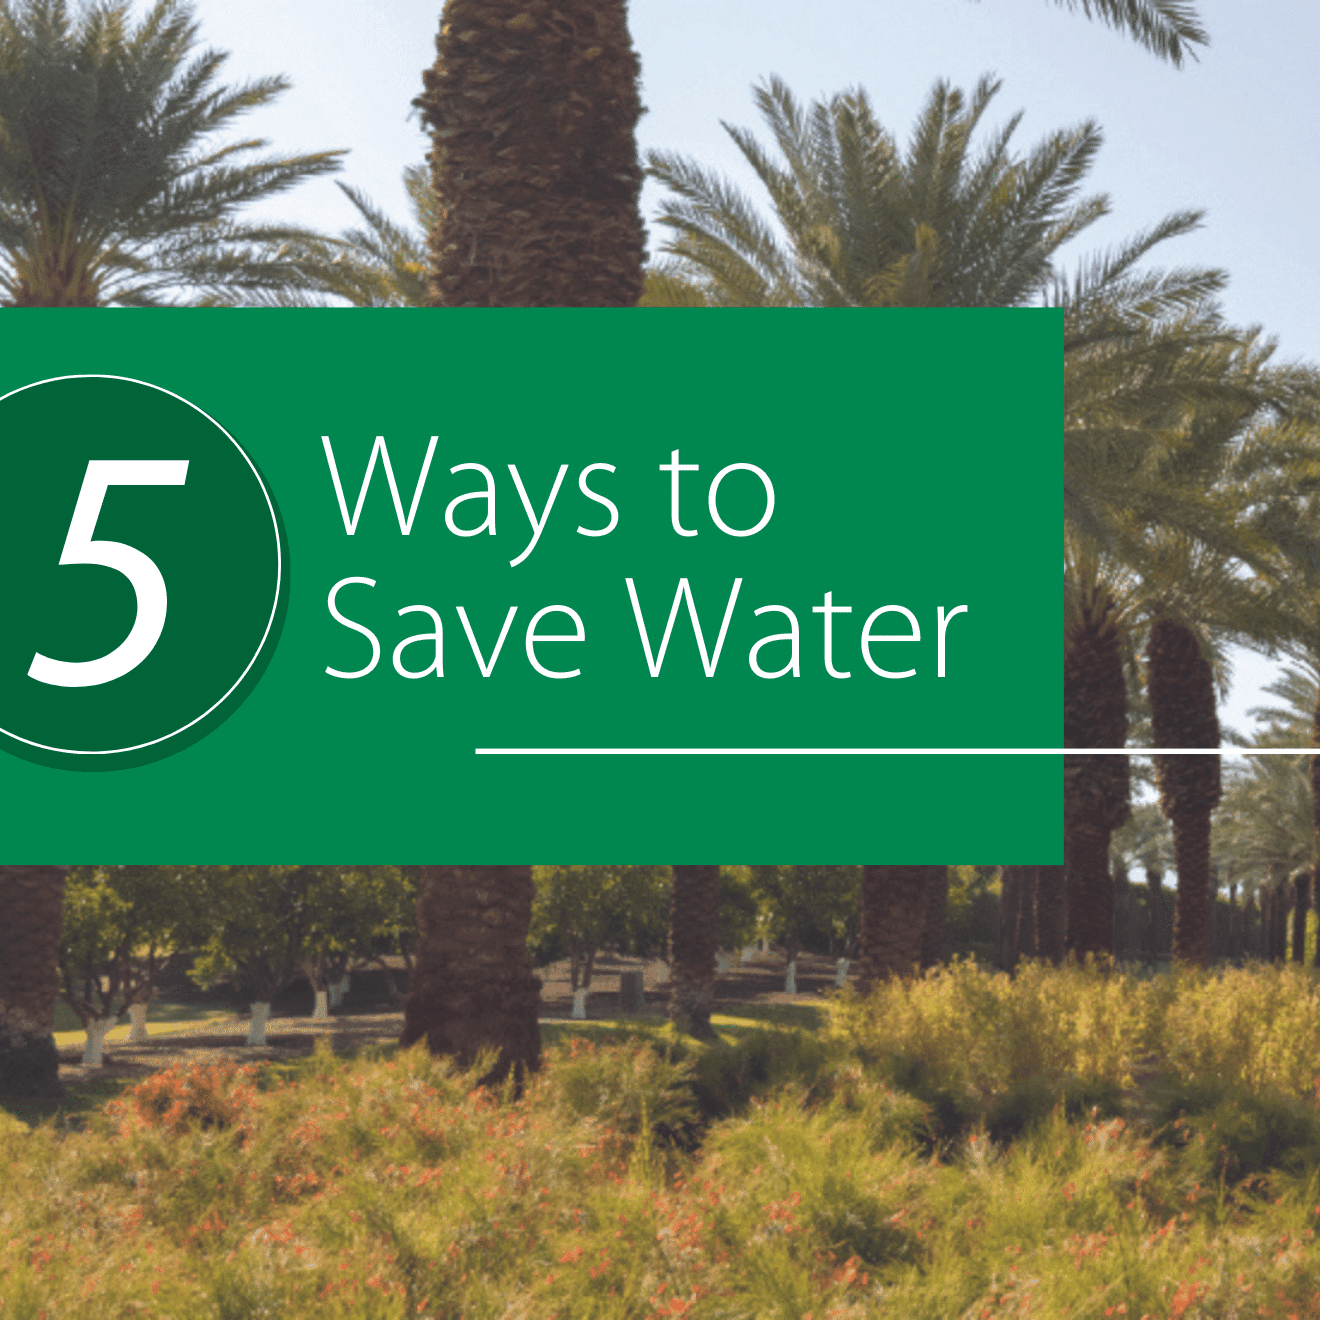 5 Ways to Save